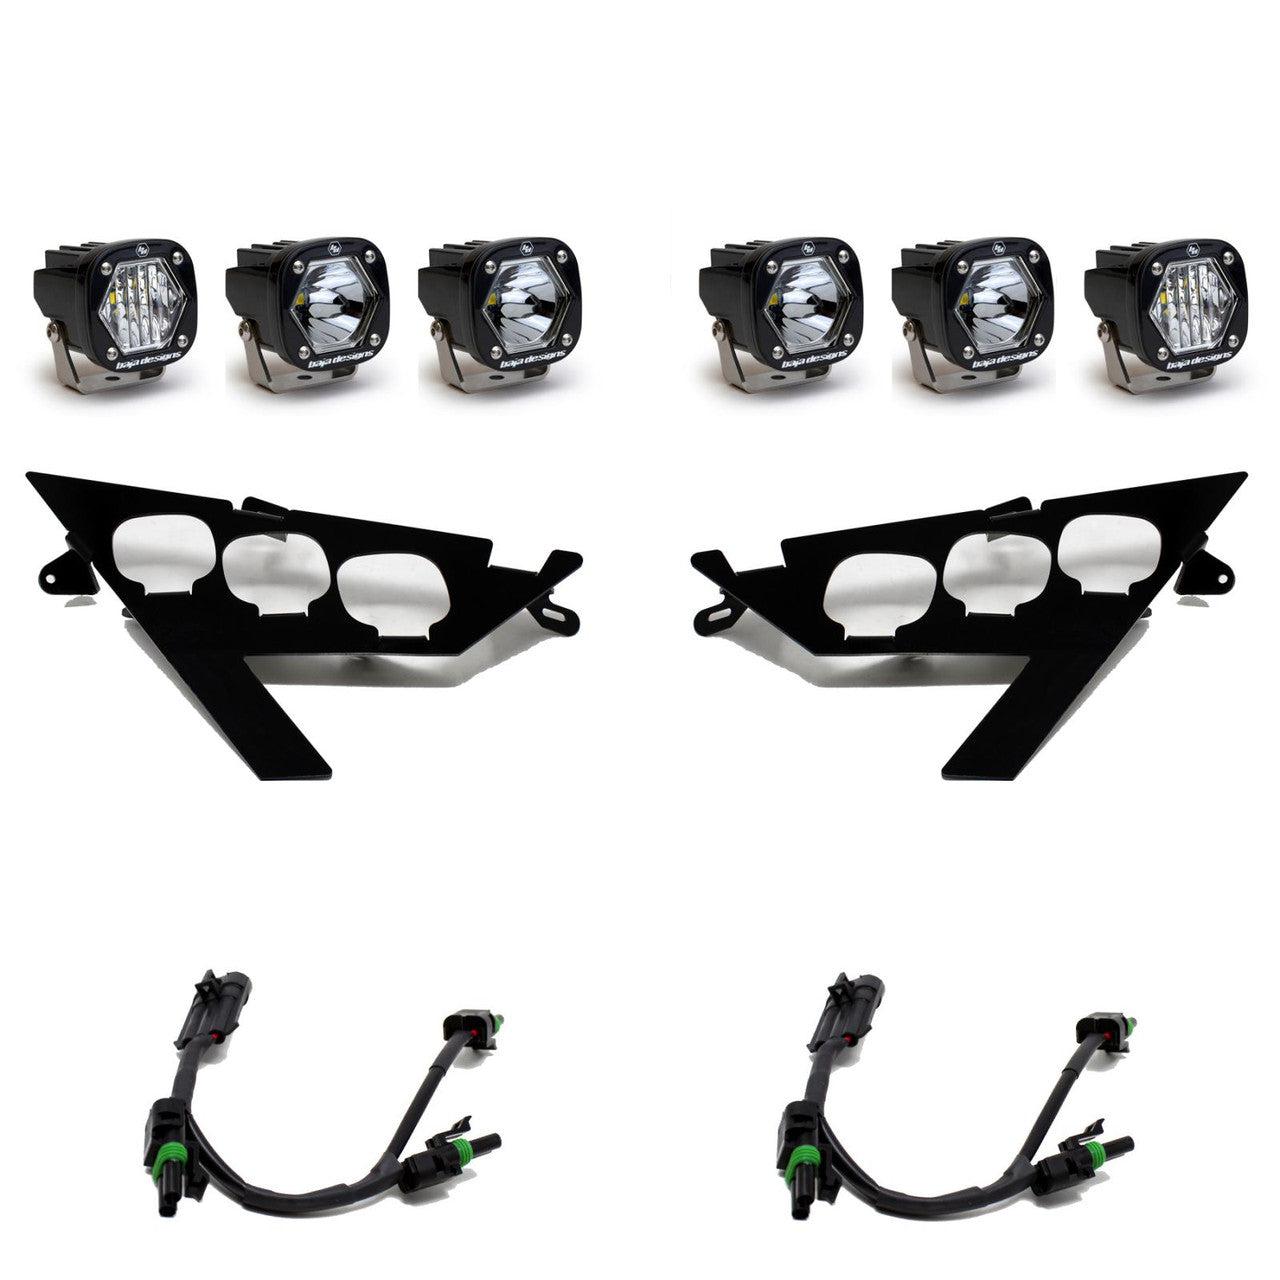 S1 TRIPLE LED HEADLIGHT KIT FOR RZR PRO / TURBO R S1-Lighting Kit-Baja Designs-Black Market UTV